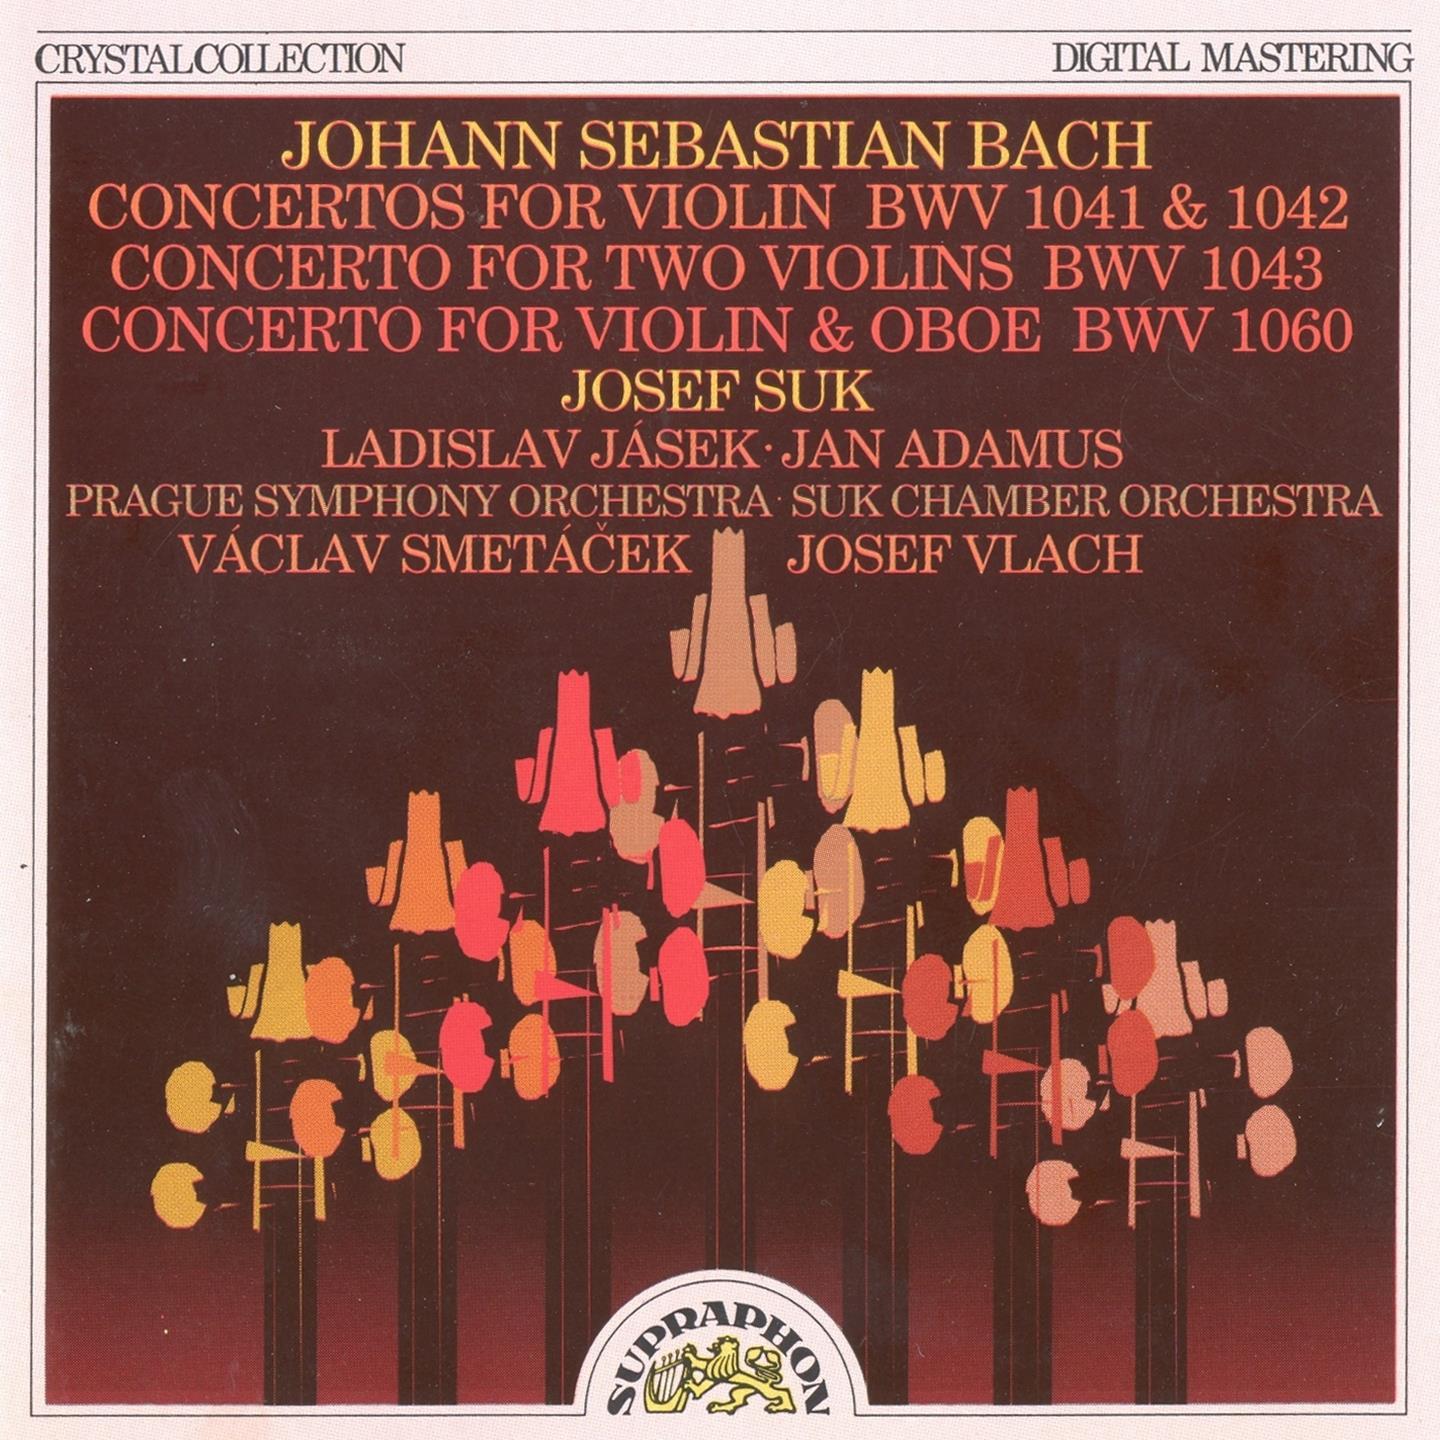 Bach: Violin and Oboe Concertos